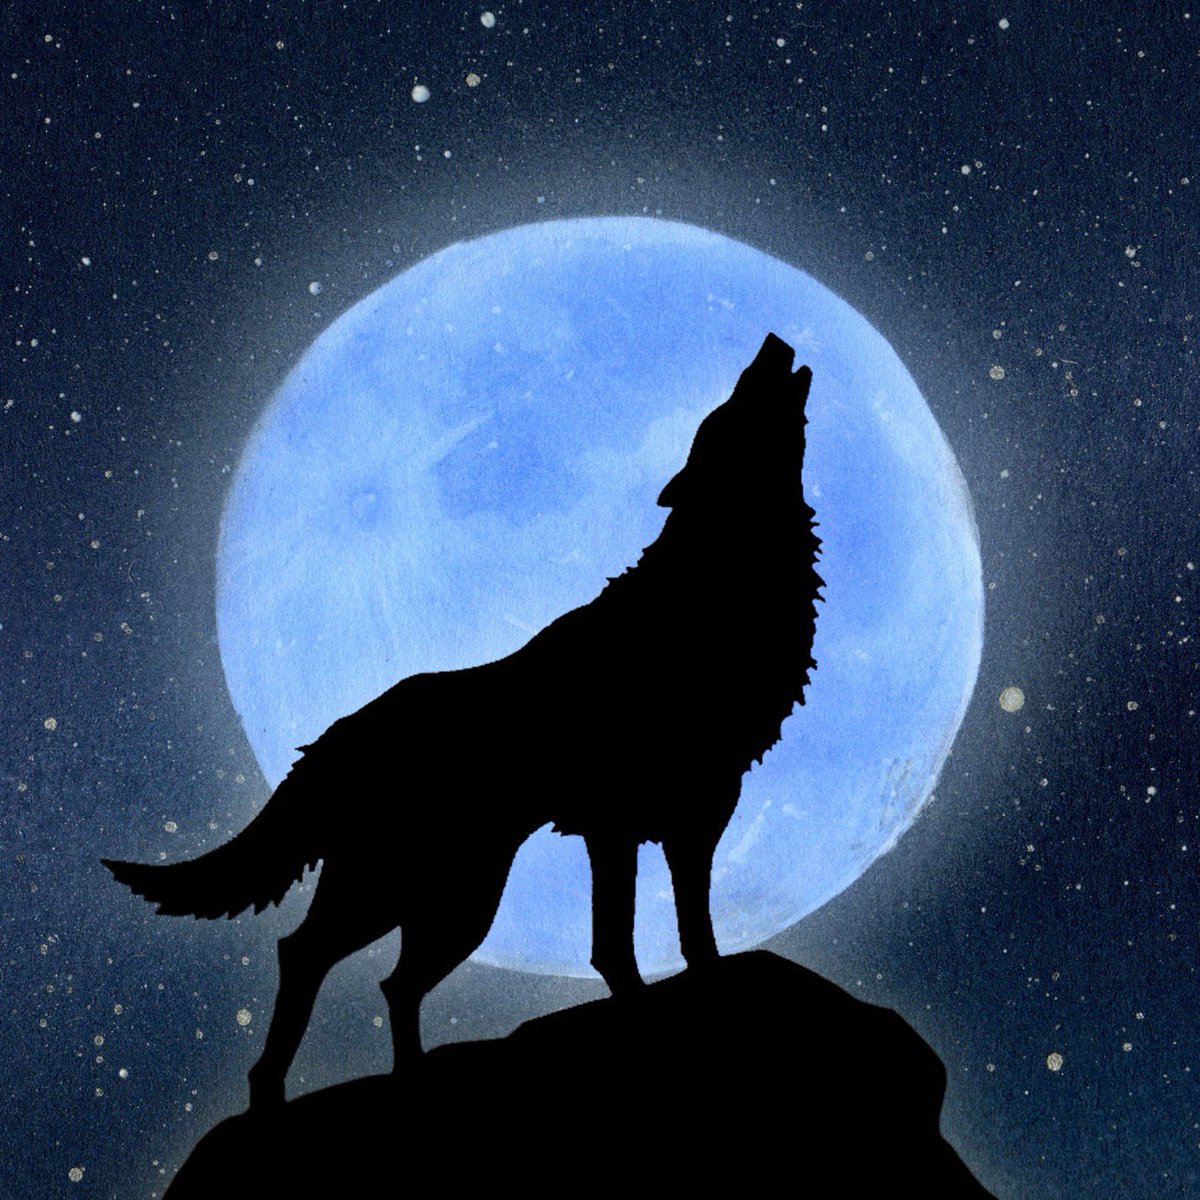 Twoucan 月と狼 の注目ツイート イラスト マンガ